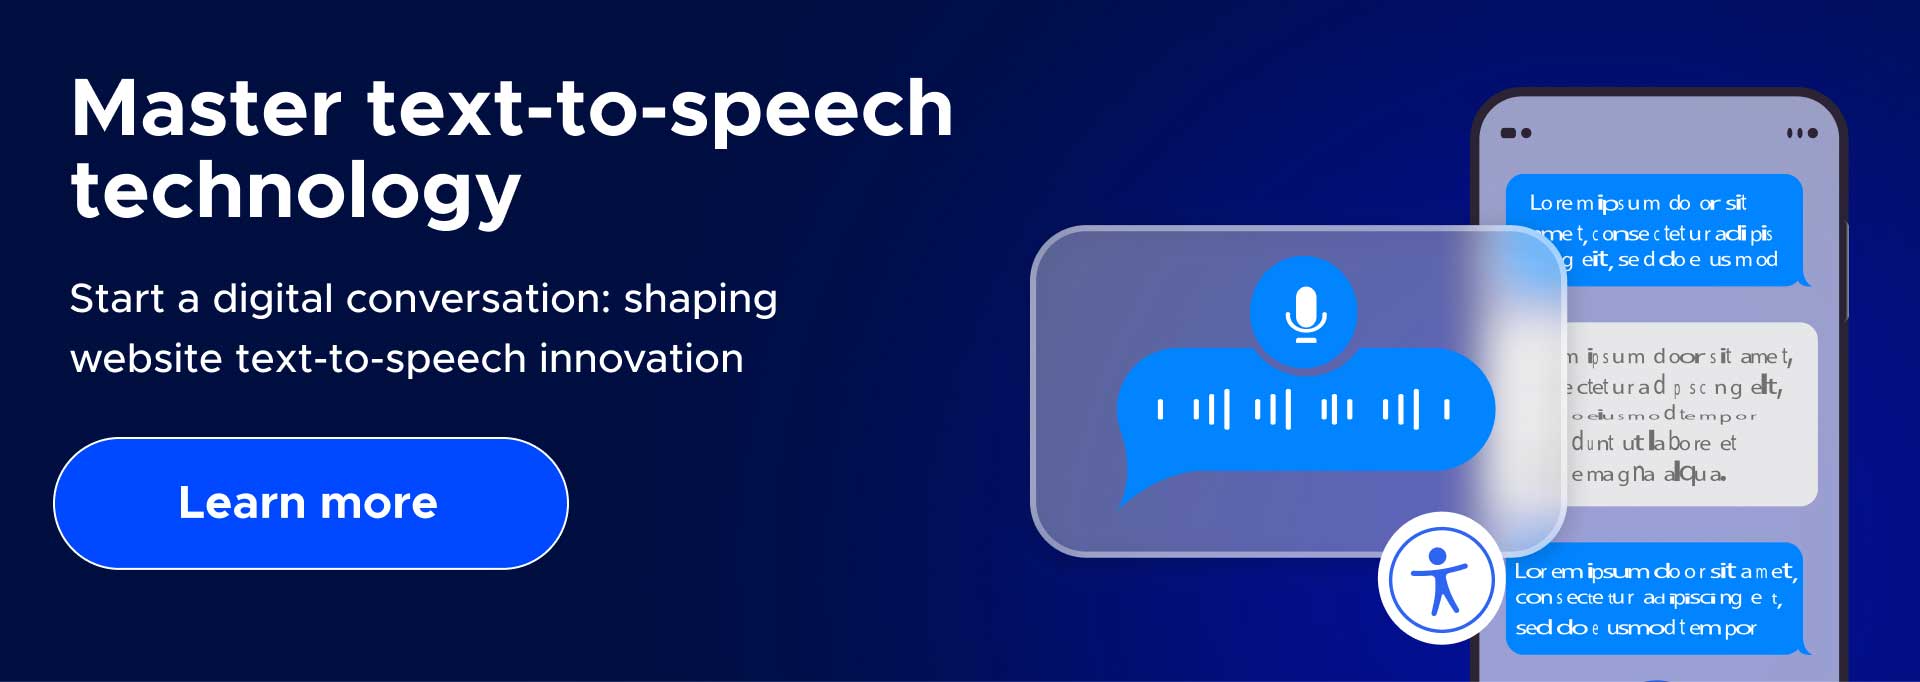 Start a digital conversation: shaping website text-to-speech innovation